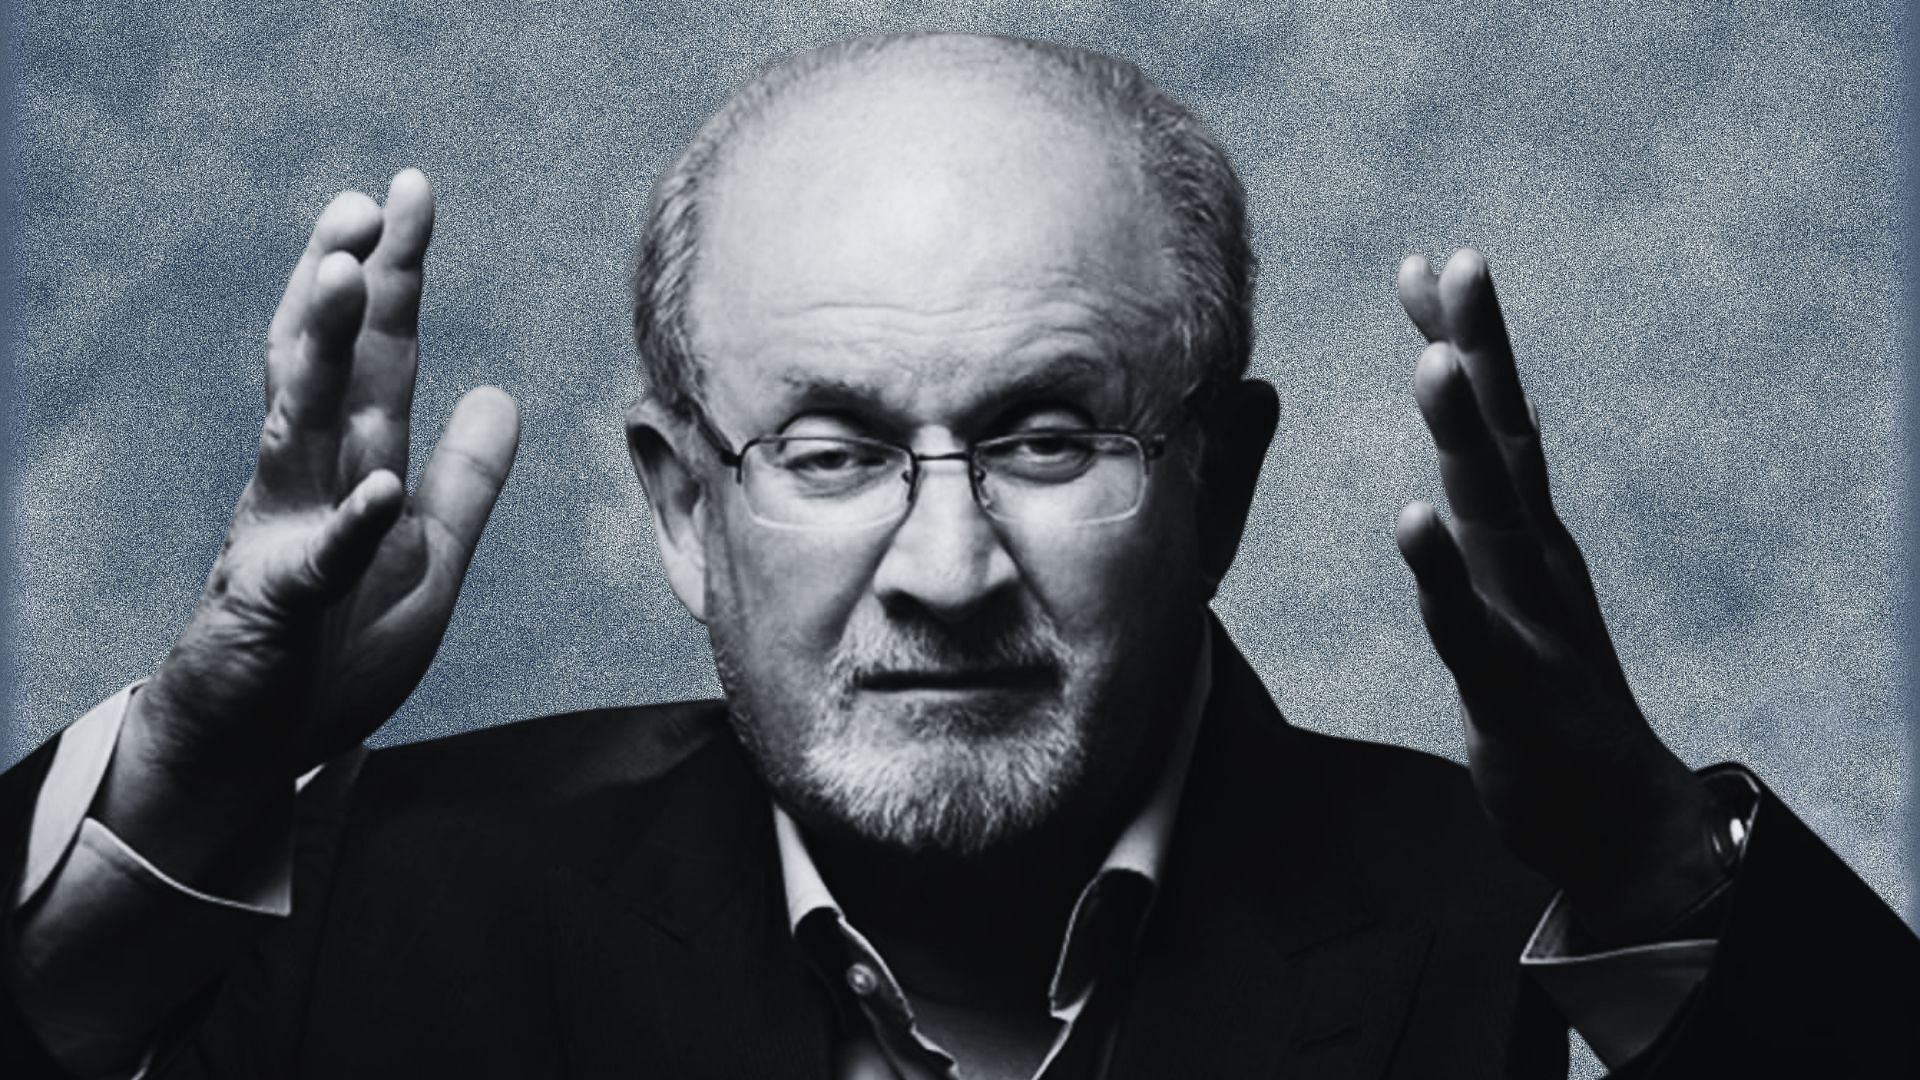 <div class="paragraphs"><p>Salman Rushdie की एक आंख की रोशनी गयी,एक हाथ ने भी काम करना बंद किया- एजेंट</p></div>